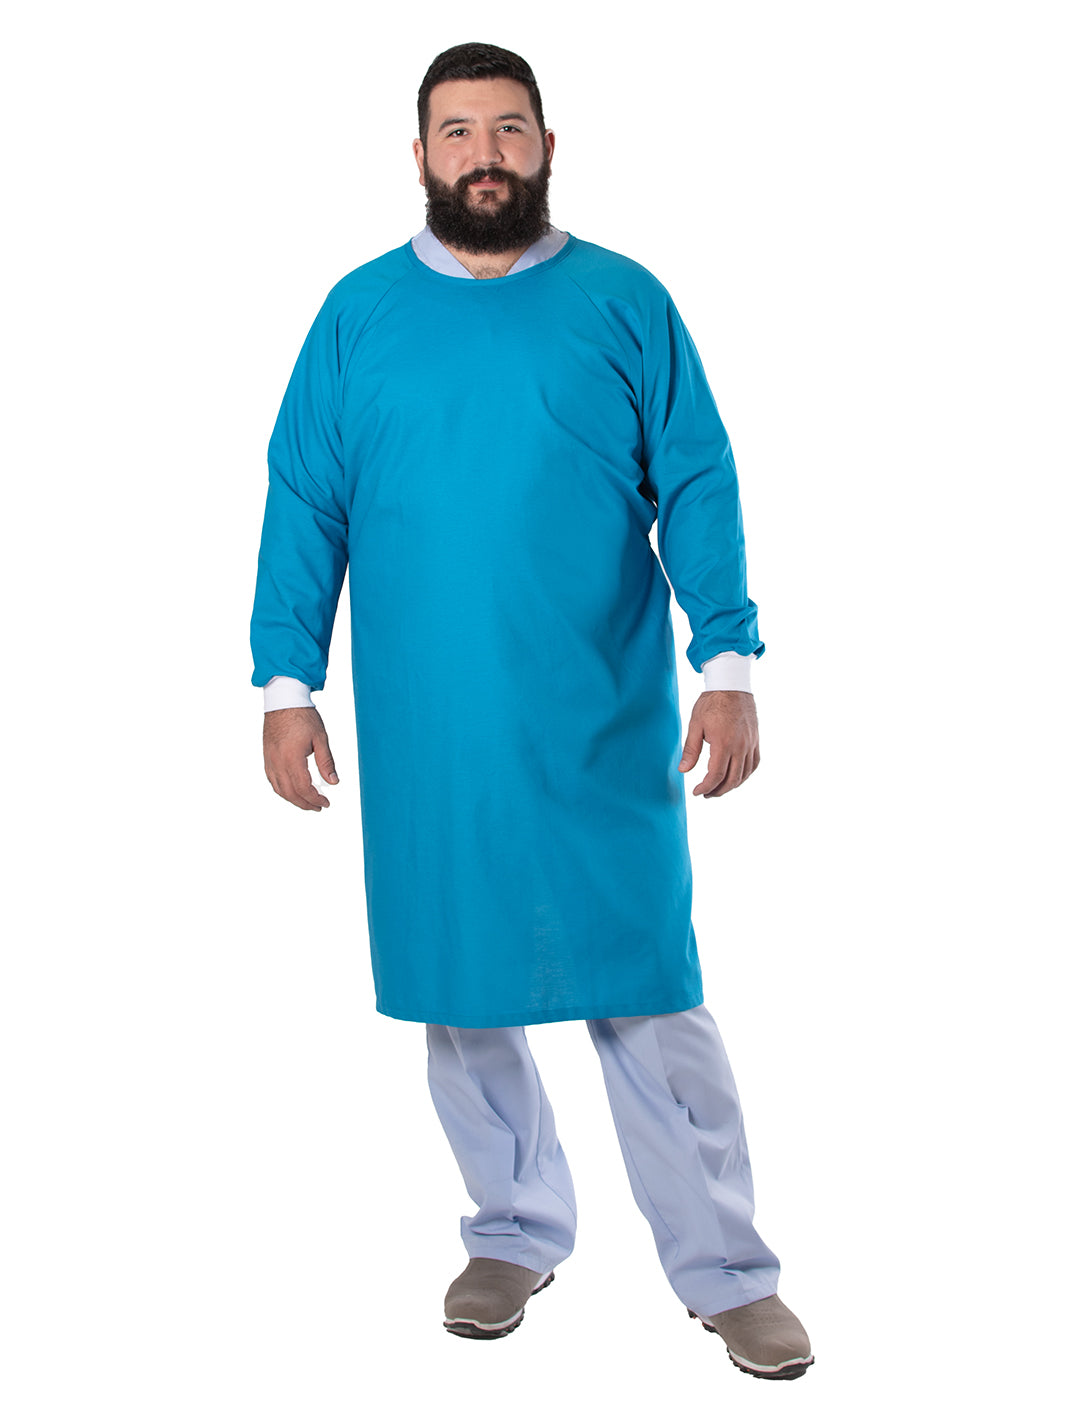 Hombre vistiendo bata para cirujano unisex de tela reutilizable color turquesa con puños de cárdigan y listones de ajuste en la espalda